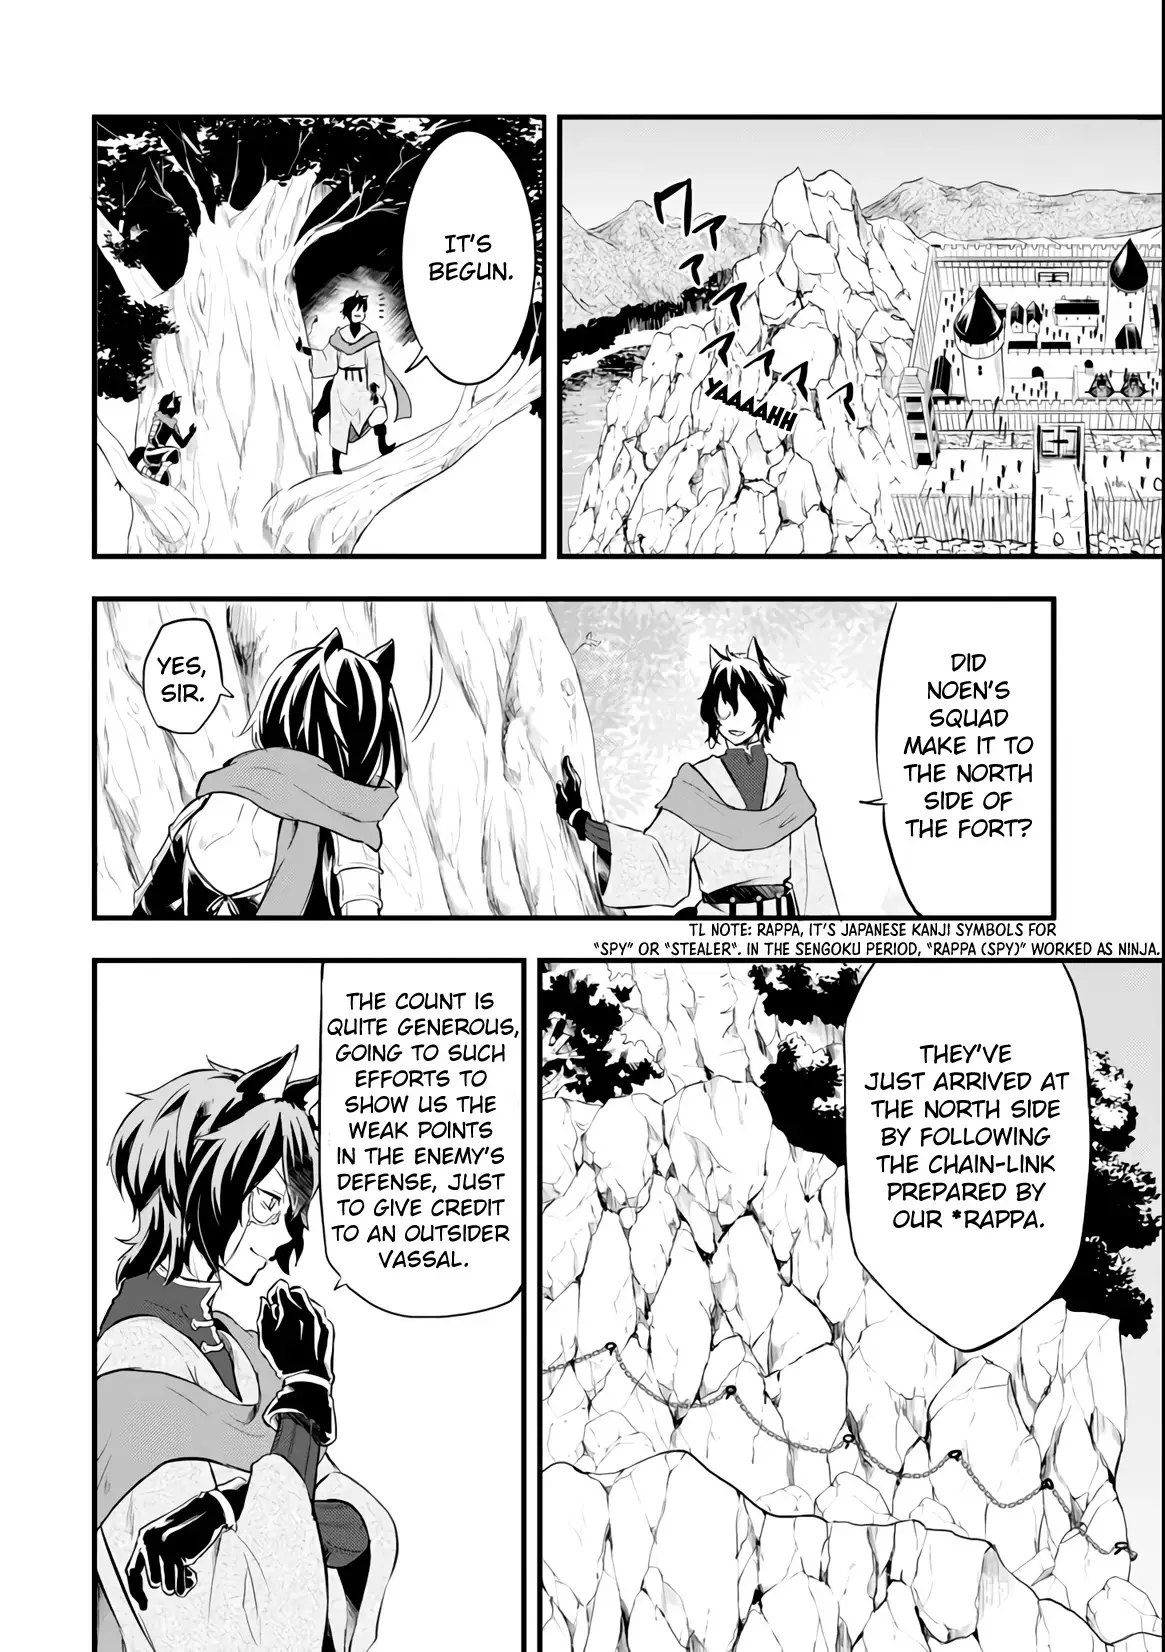 Mysterious Job Called Oda Nobunaga - 12 page 21-0c1296c3